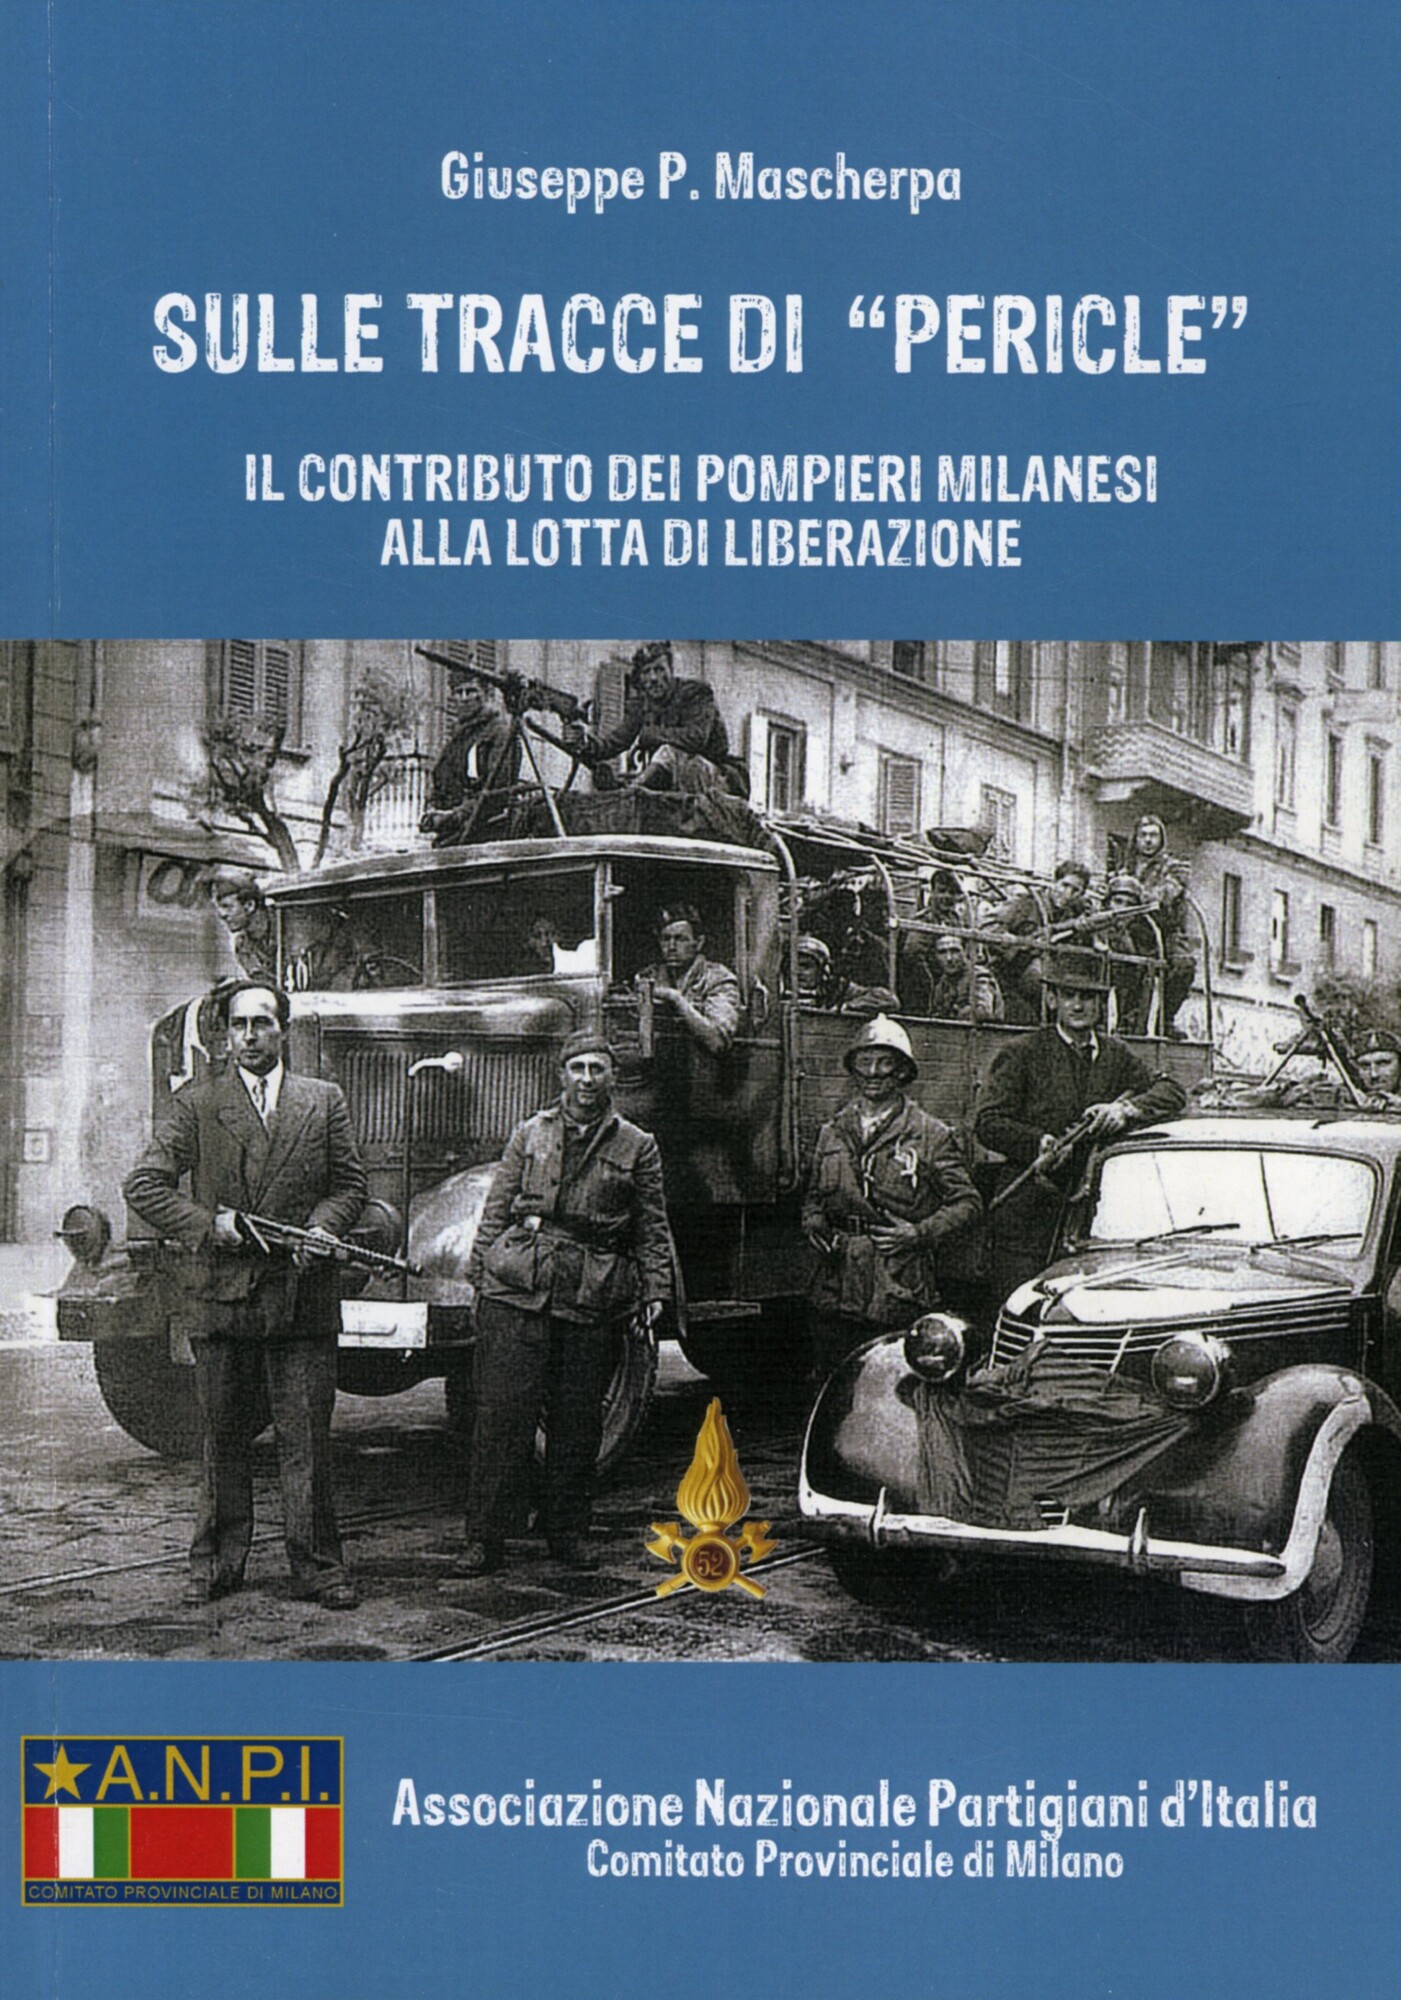 Archivio Bescapé - giuseppe-bescape-all-interno-del-libro-sulle-tracce-di-pericle-5.jpg